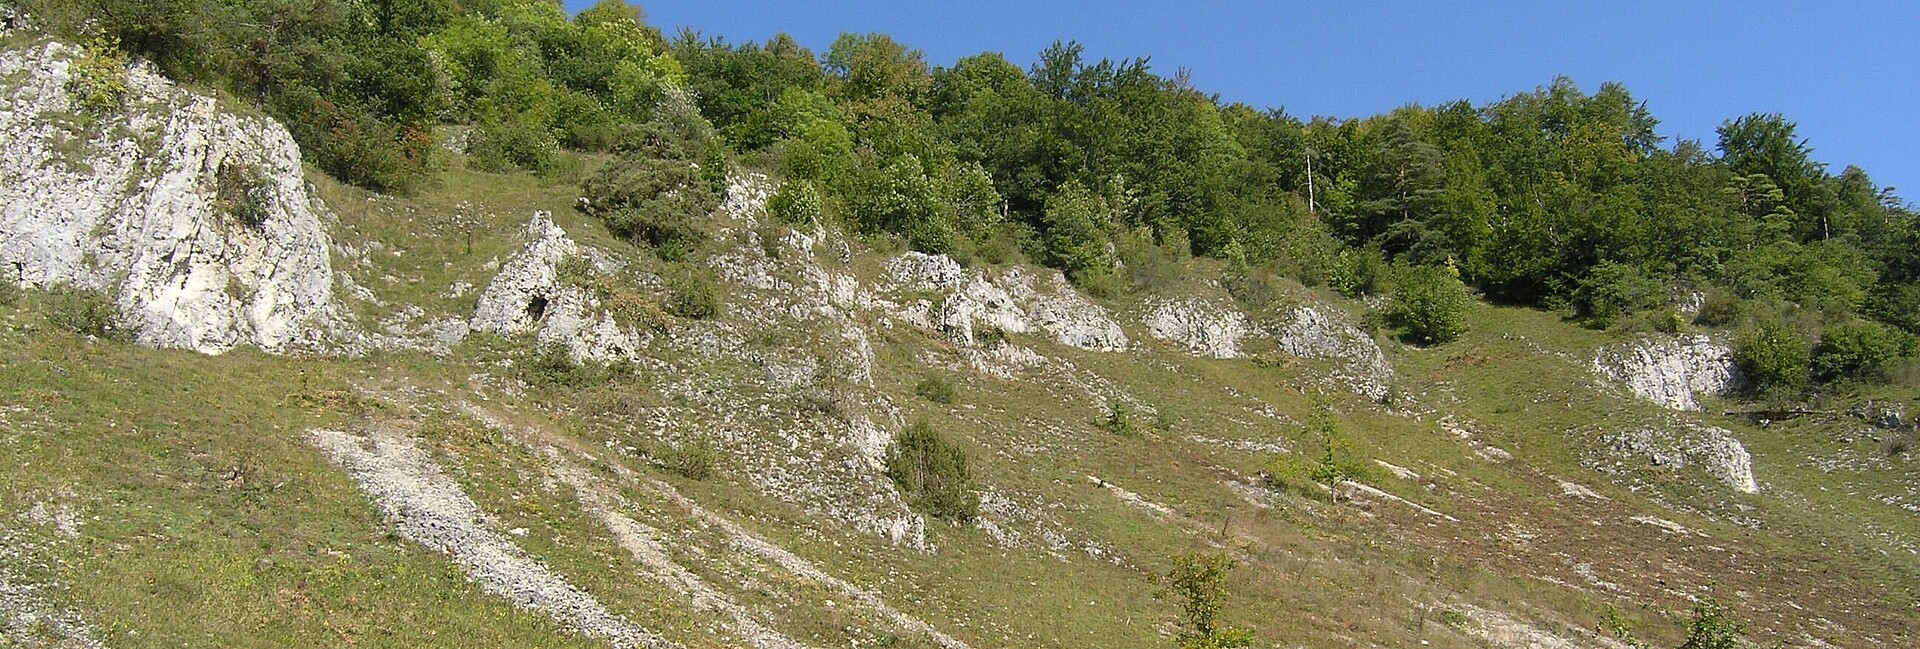 Blick auf einen steilen Hang mit Felsen